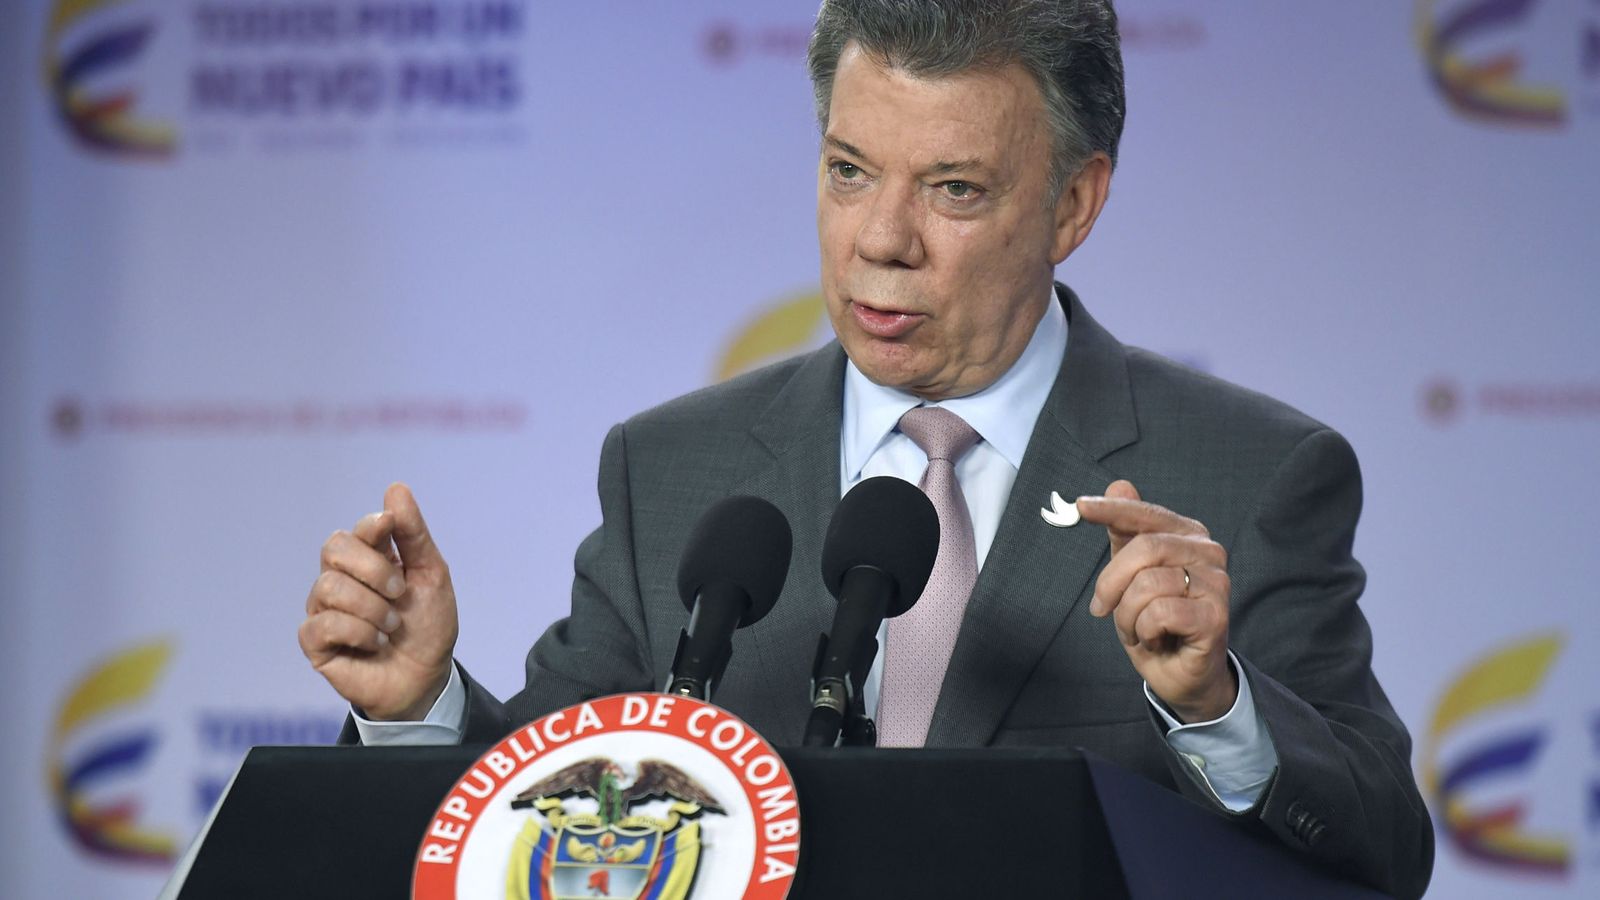 Foto: Fotografía cedida por la Presidencia de Colombia del mandatario Juan Manuel Santos. (EFE)